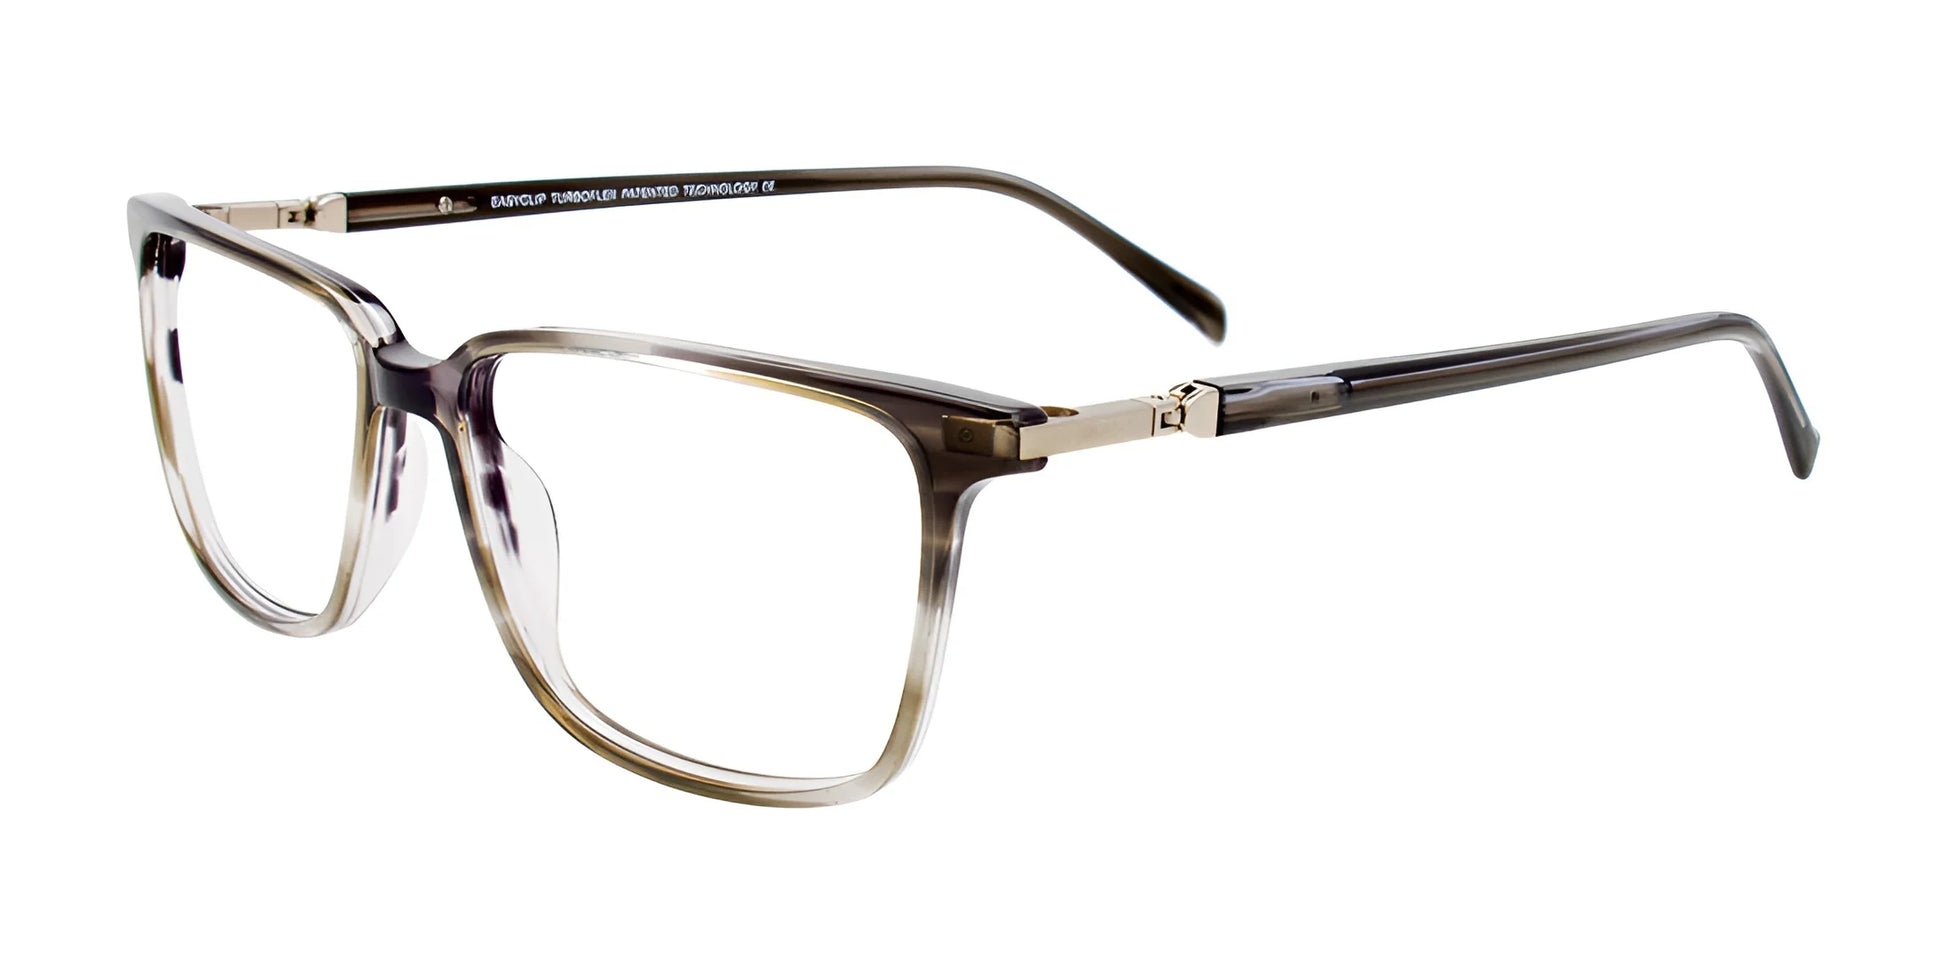 EasyClip EC589 Eyeglasses Grey Gradient